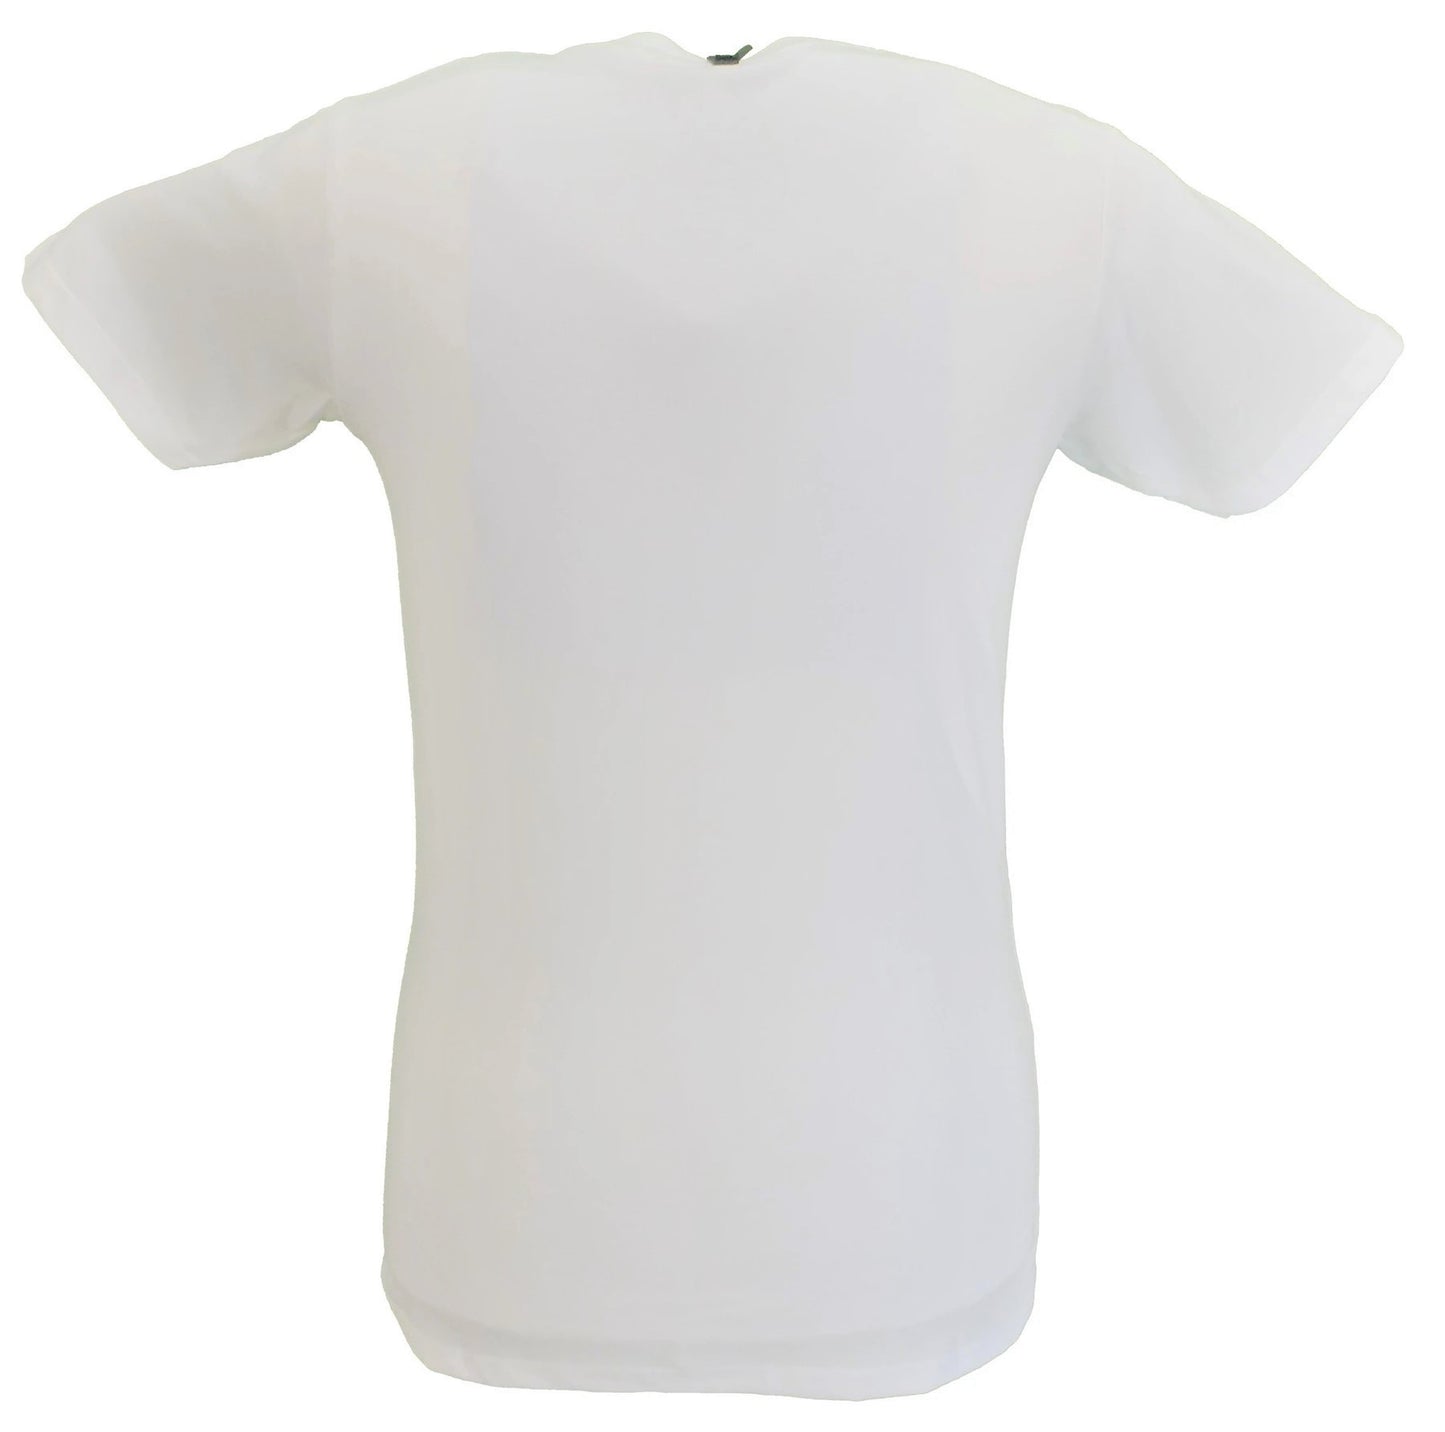 Camiseta oficial blanca con logo de caras pequeñas para hombre